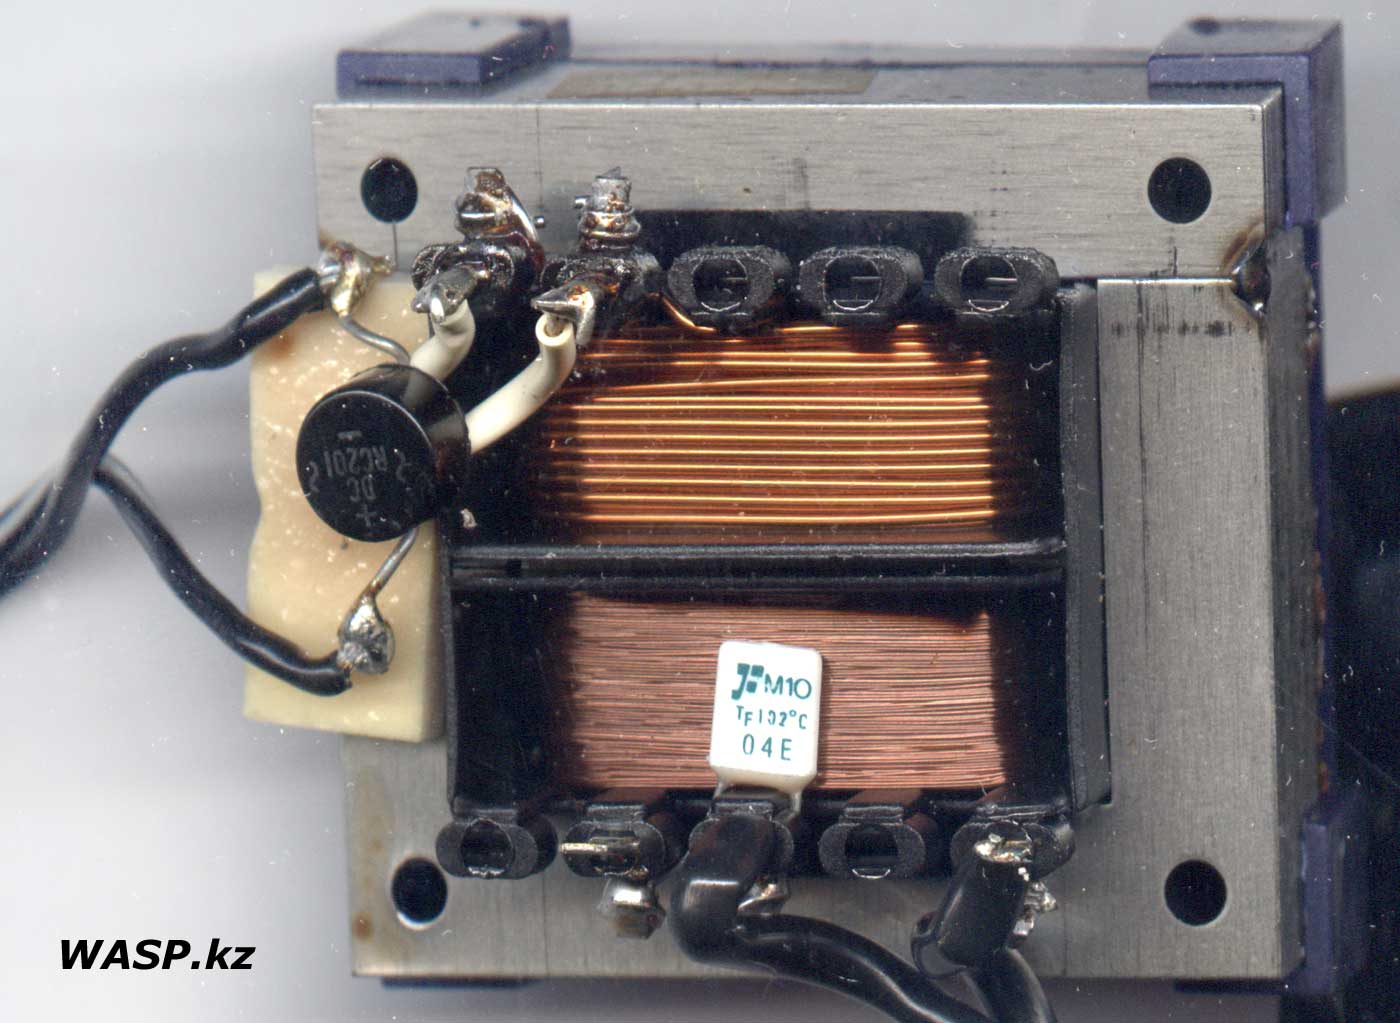 Трансформатор и диодный мост, резистор - вот и весь БП SPN 4037A